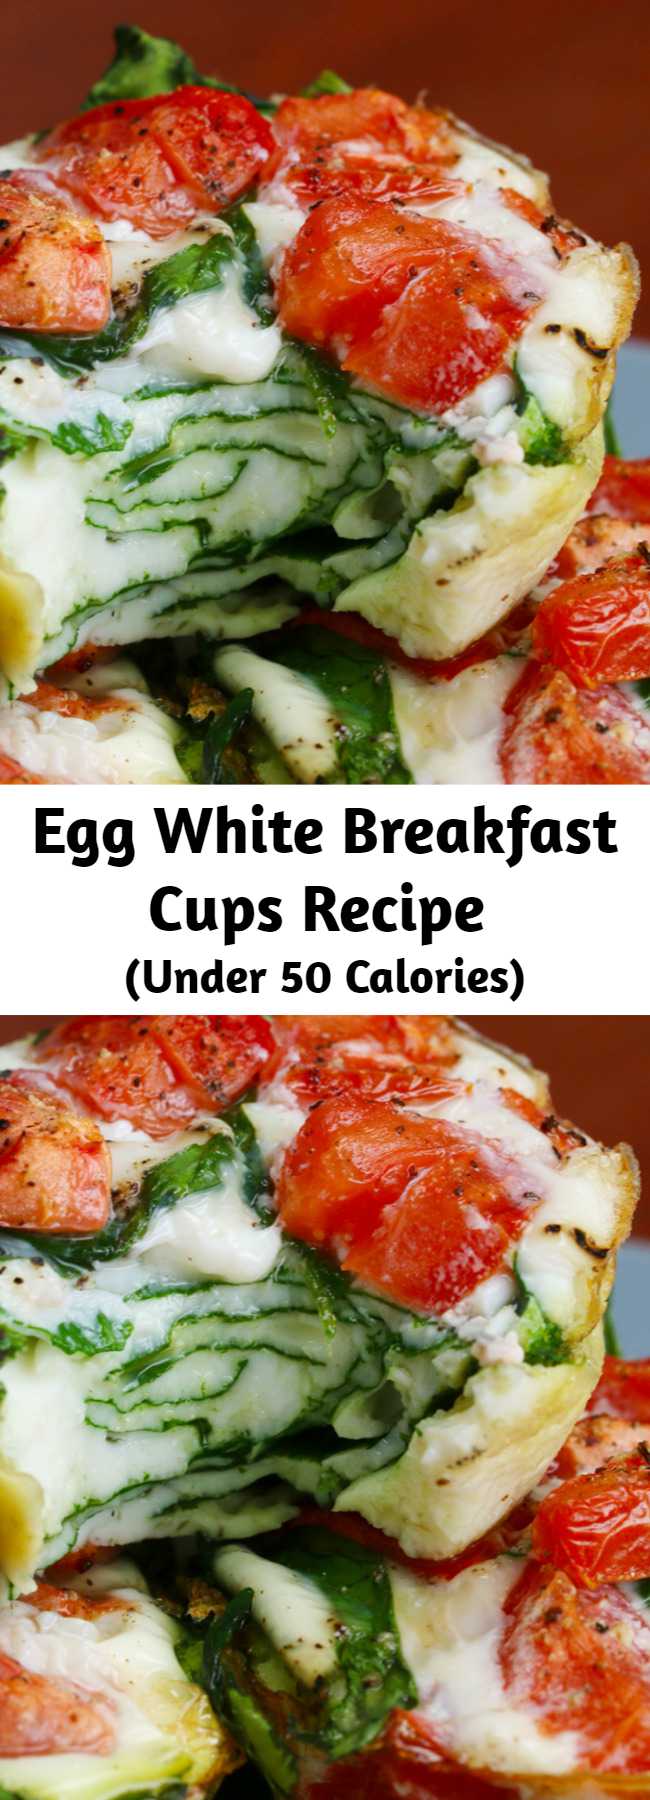 Egg White Breakfast Cups Recipe - Egg White Breakfast Cups